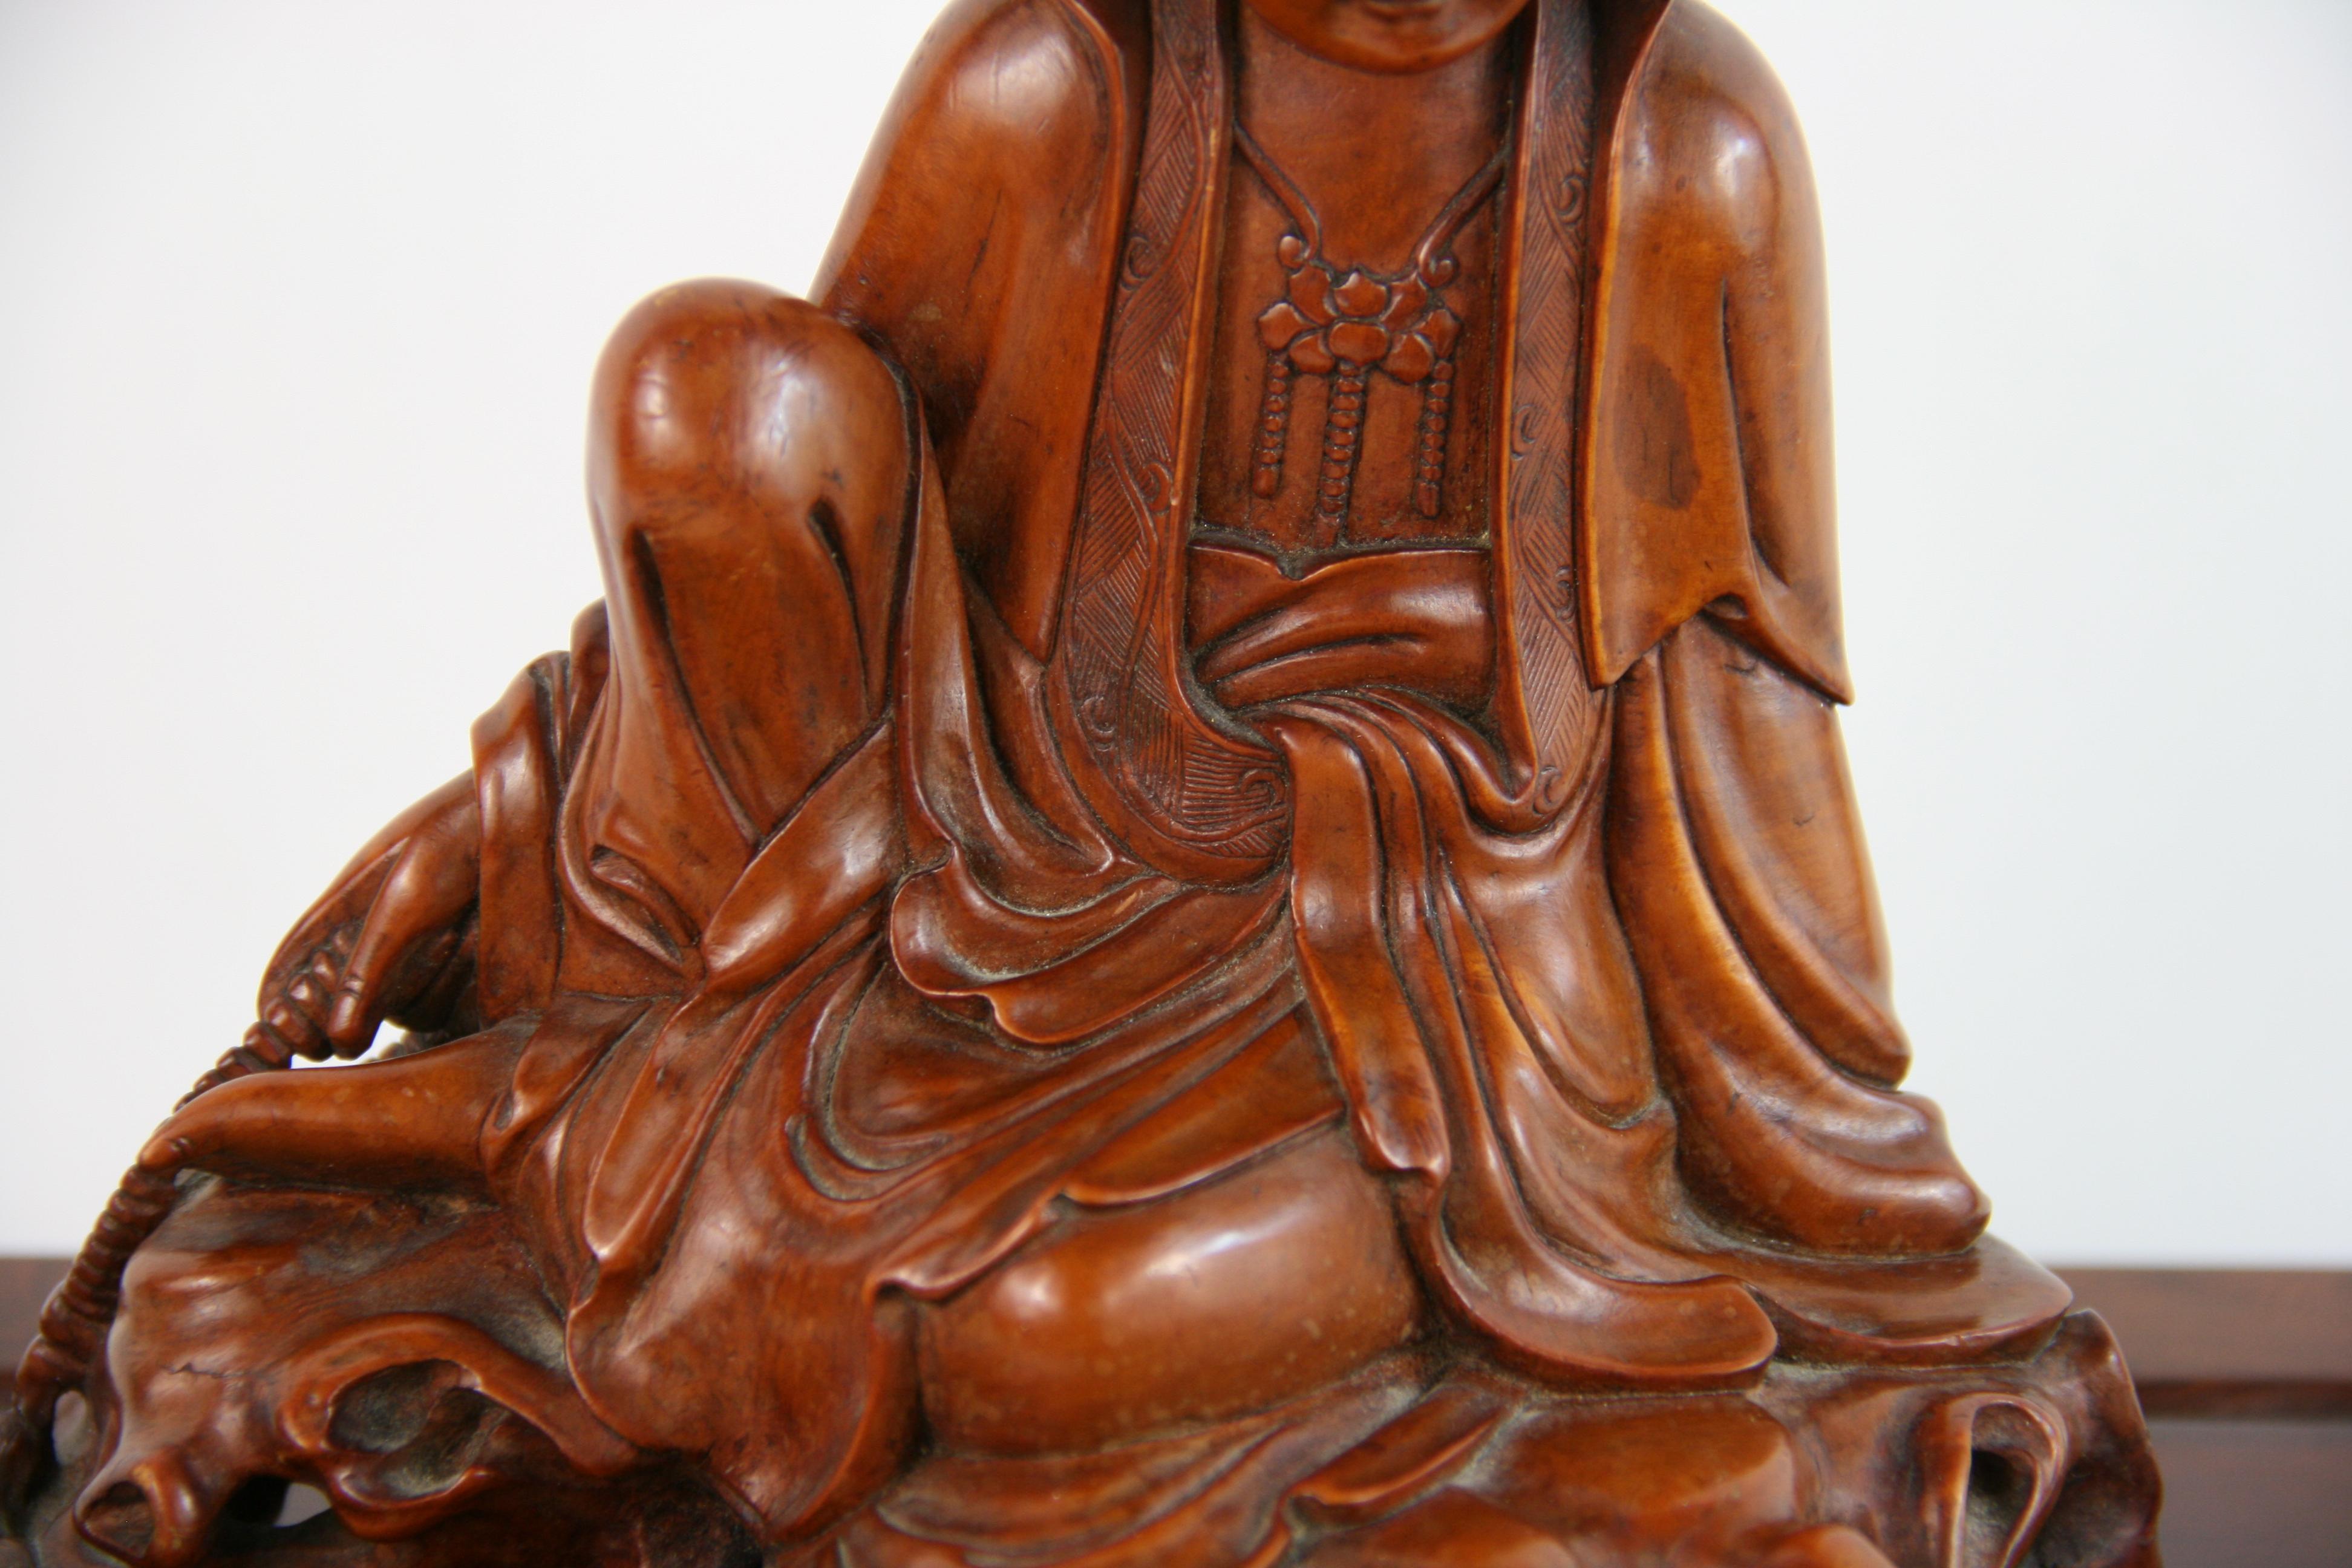 Hardwood Carved Boxwood Figure of Guangin on Wood Base, 19th Century